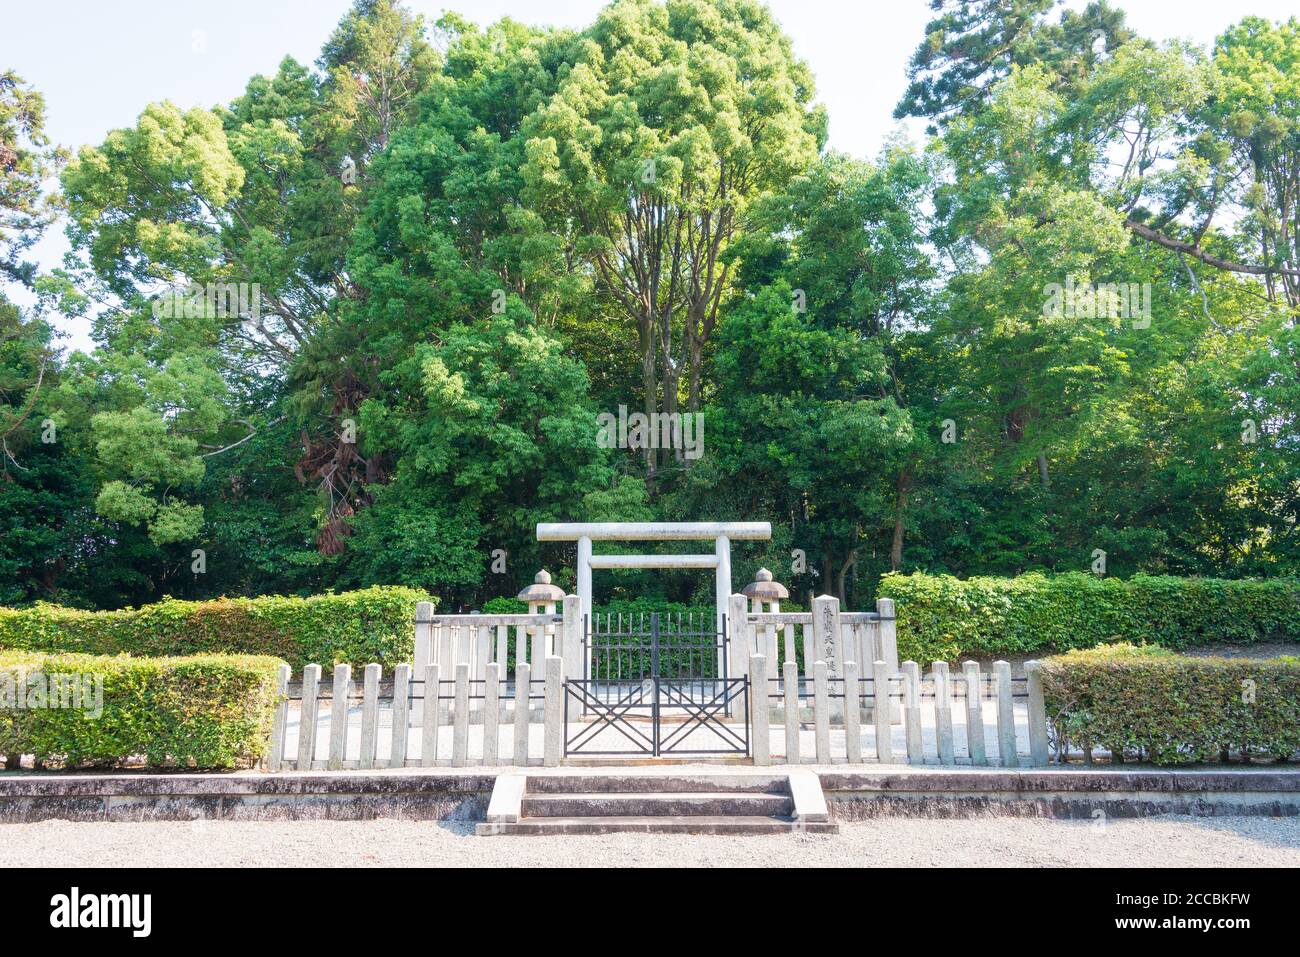 Kyoto, Japan - Tomb of Emperor Suzaku in Kyoto, Japan. Emperor Suzaku (923-952) was the 61st emperor of Japan. Stock Photo